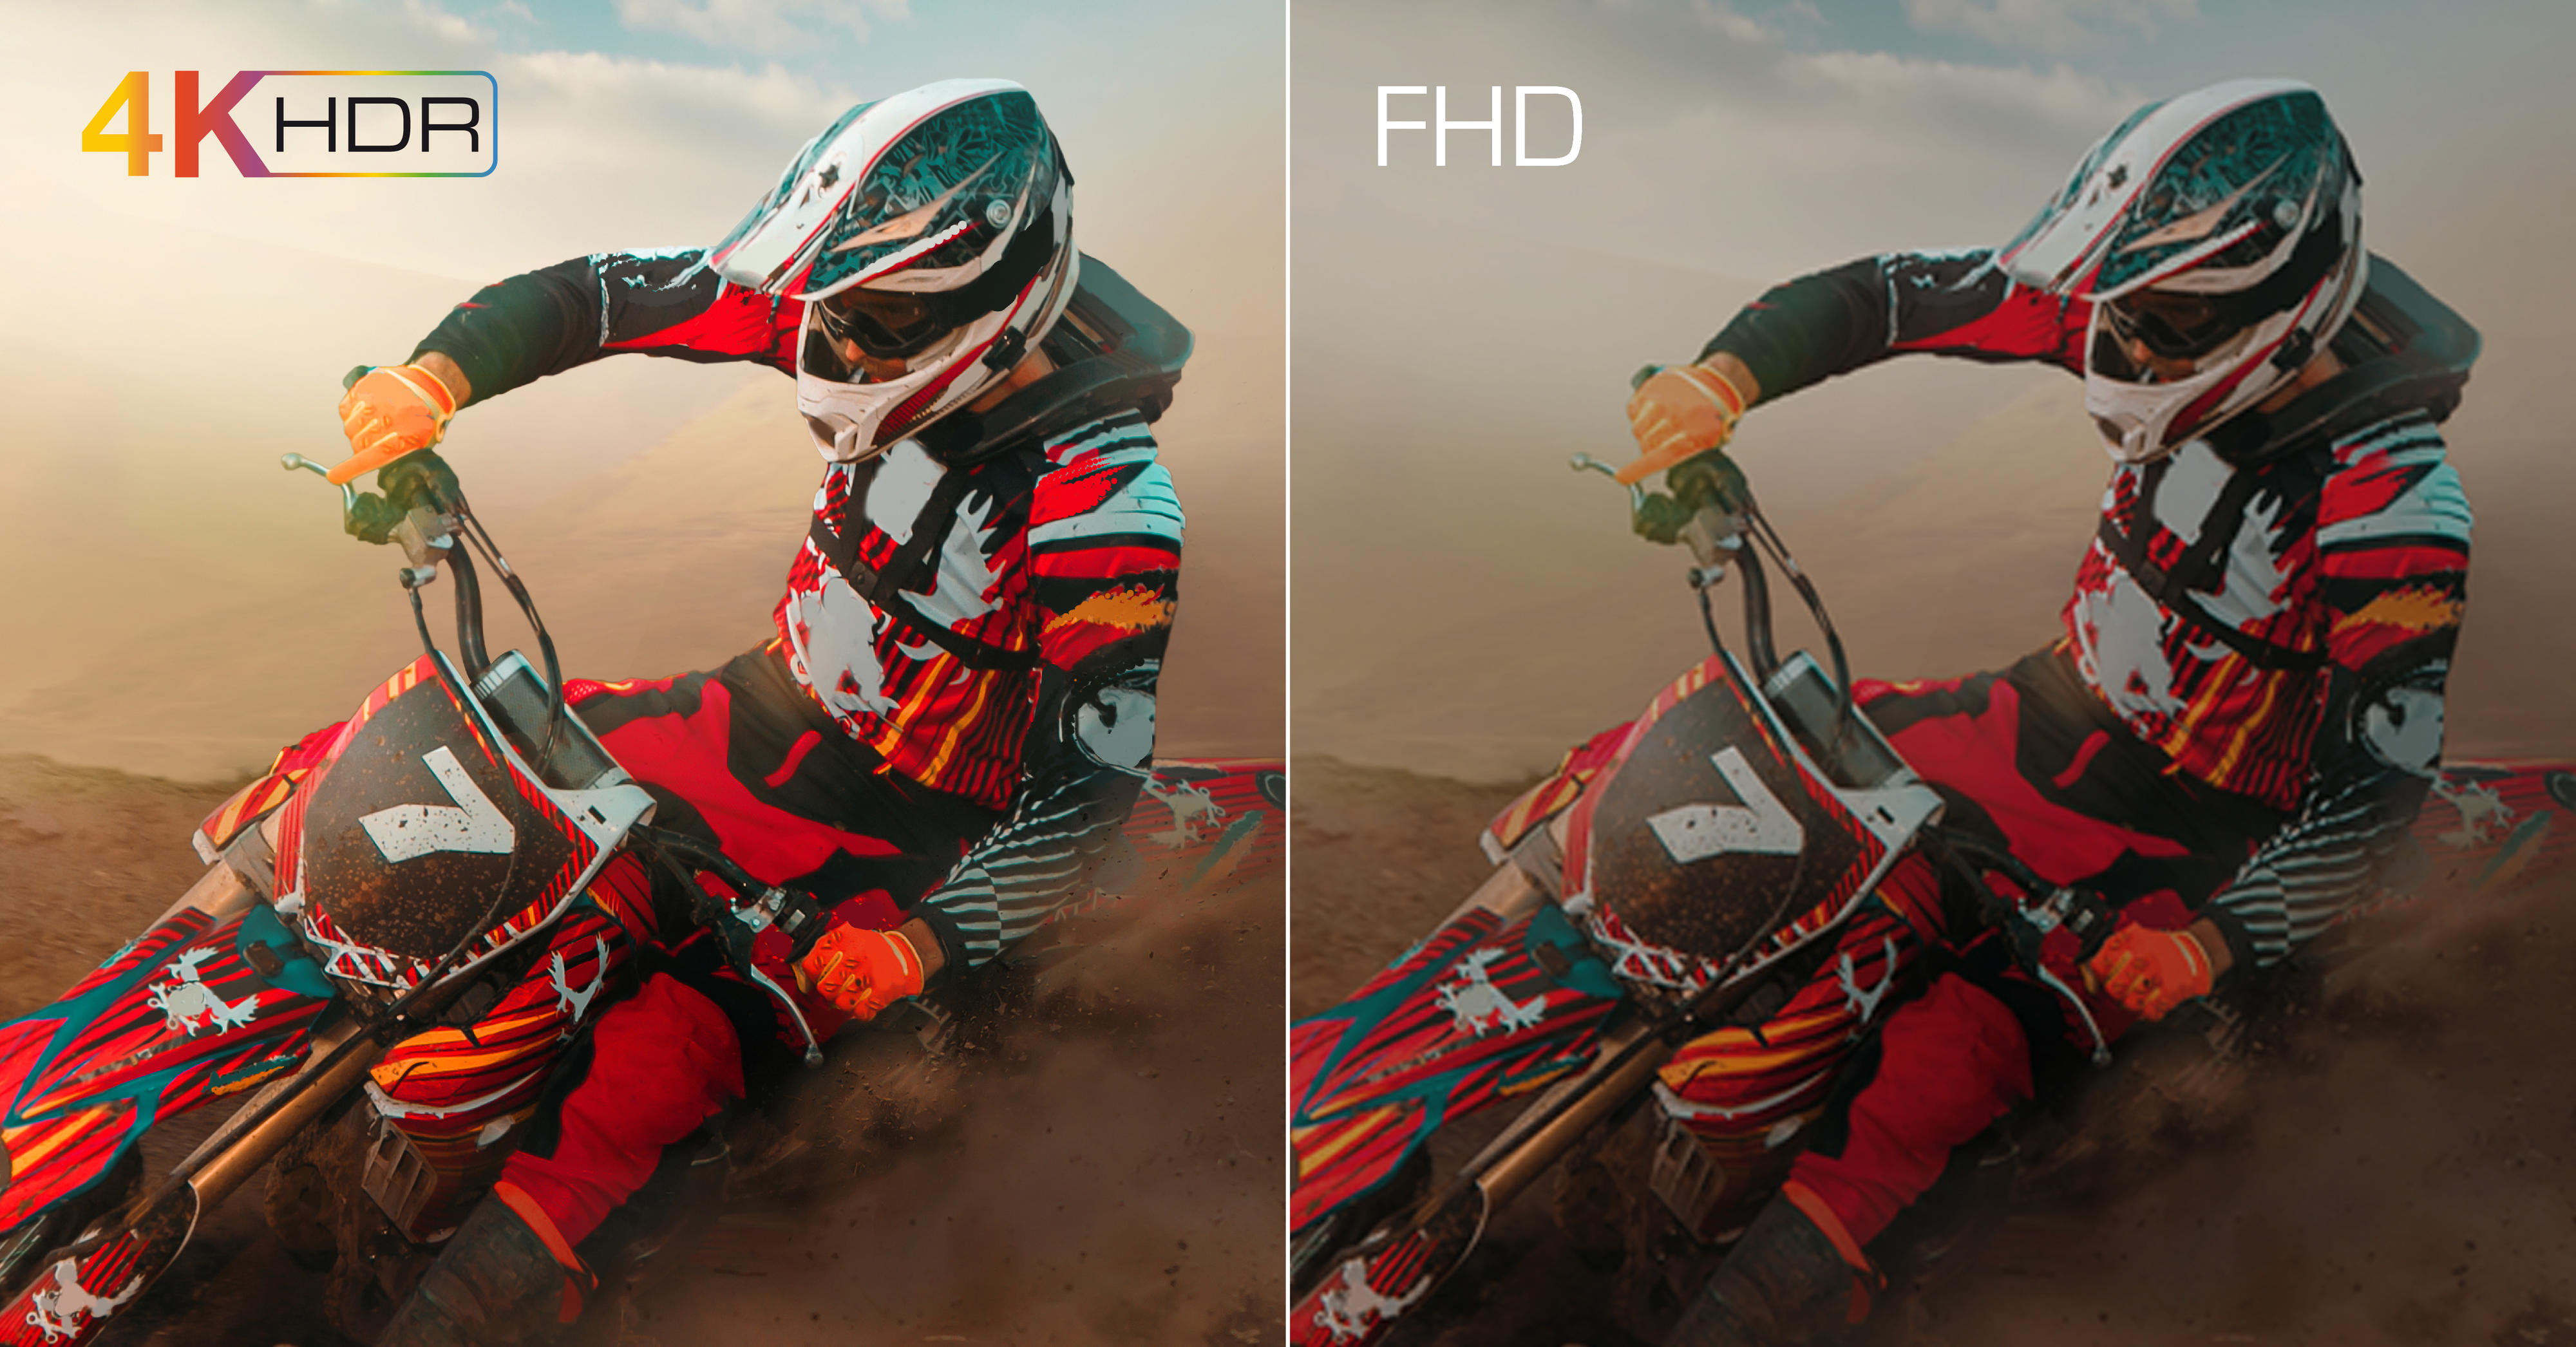 TCL - Bilder av motorsyklister med 4K HDR og FHD bildekvalitet som sammenlignes